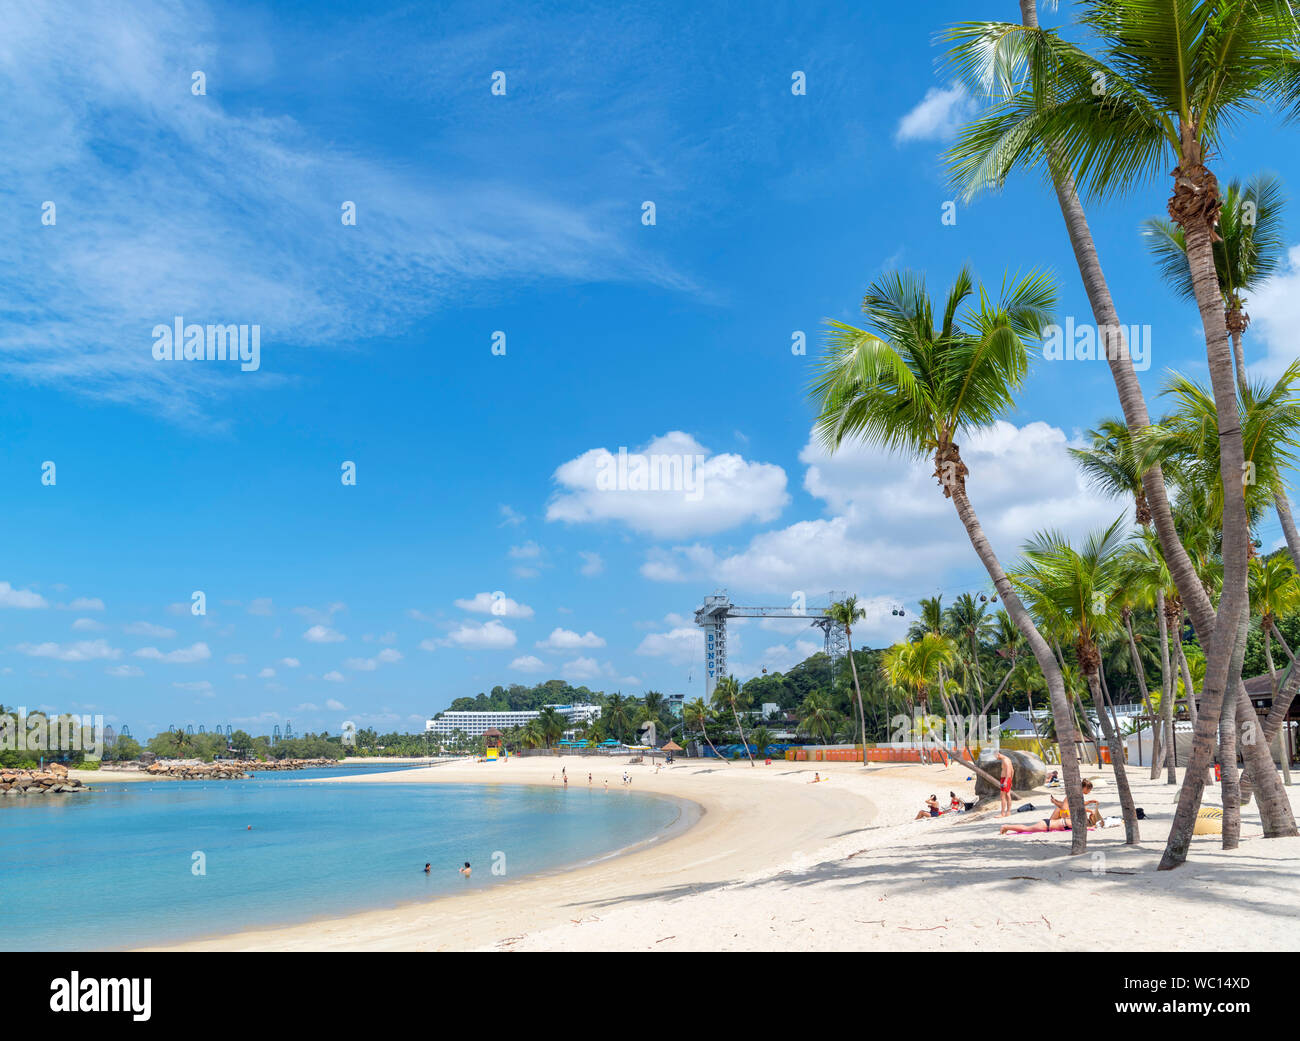 Siloso Beach on Sentosa Island, Singapore Stock Photo